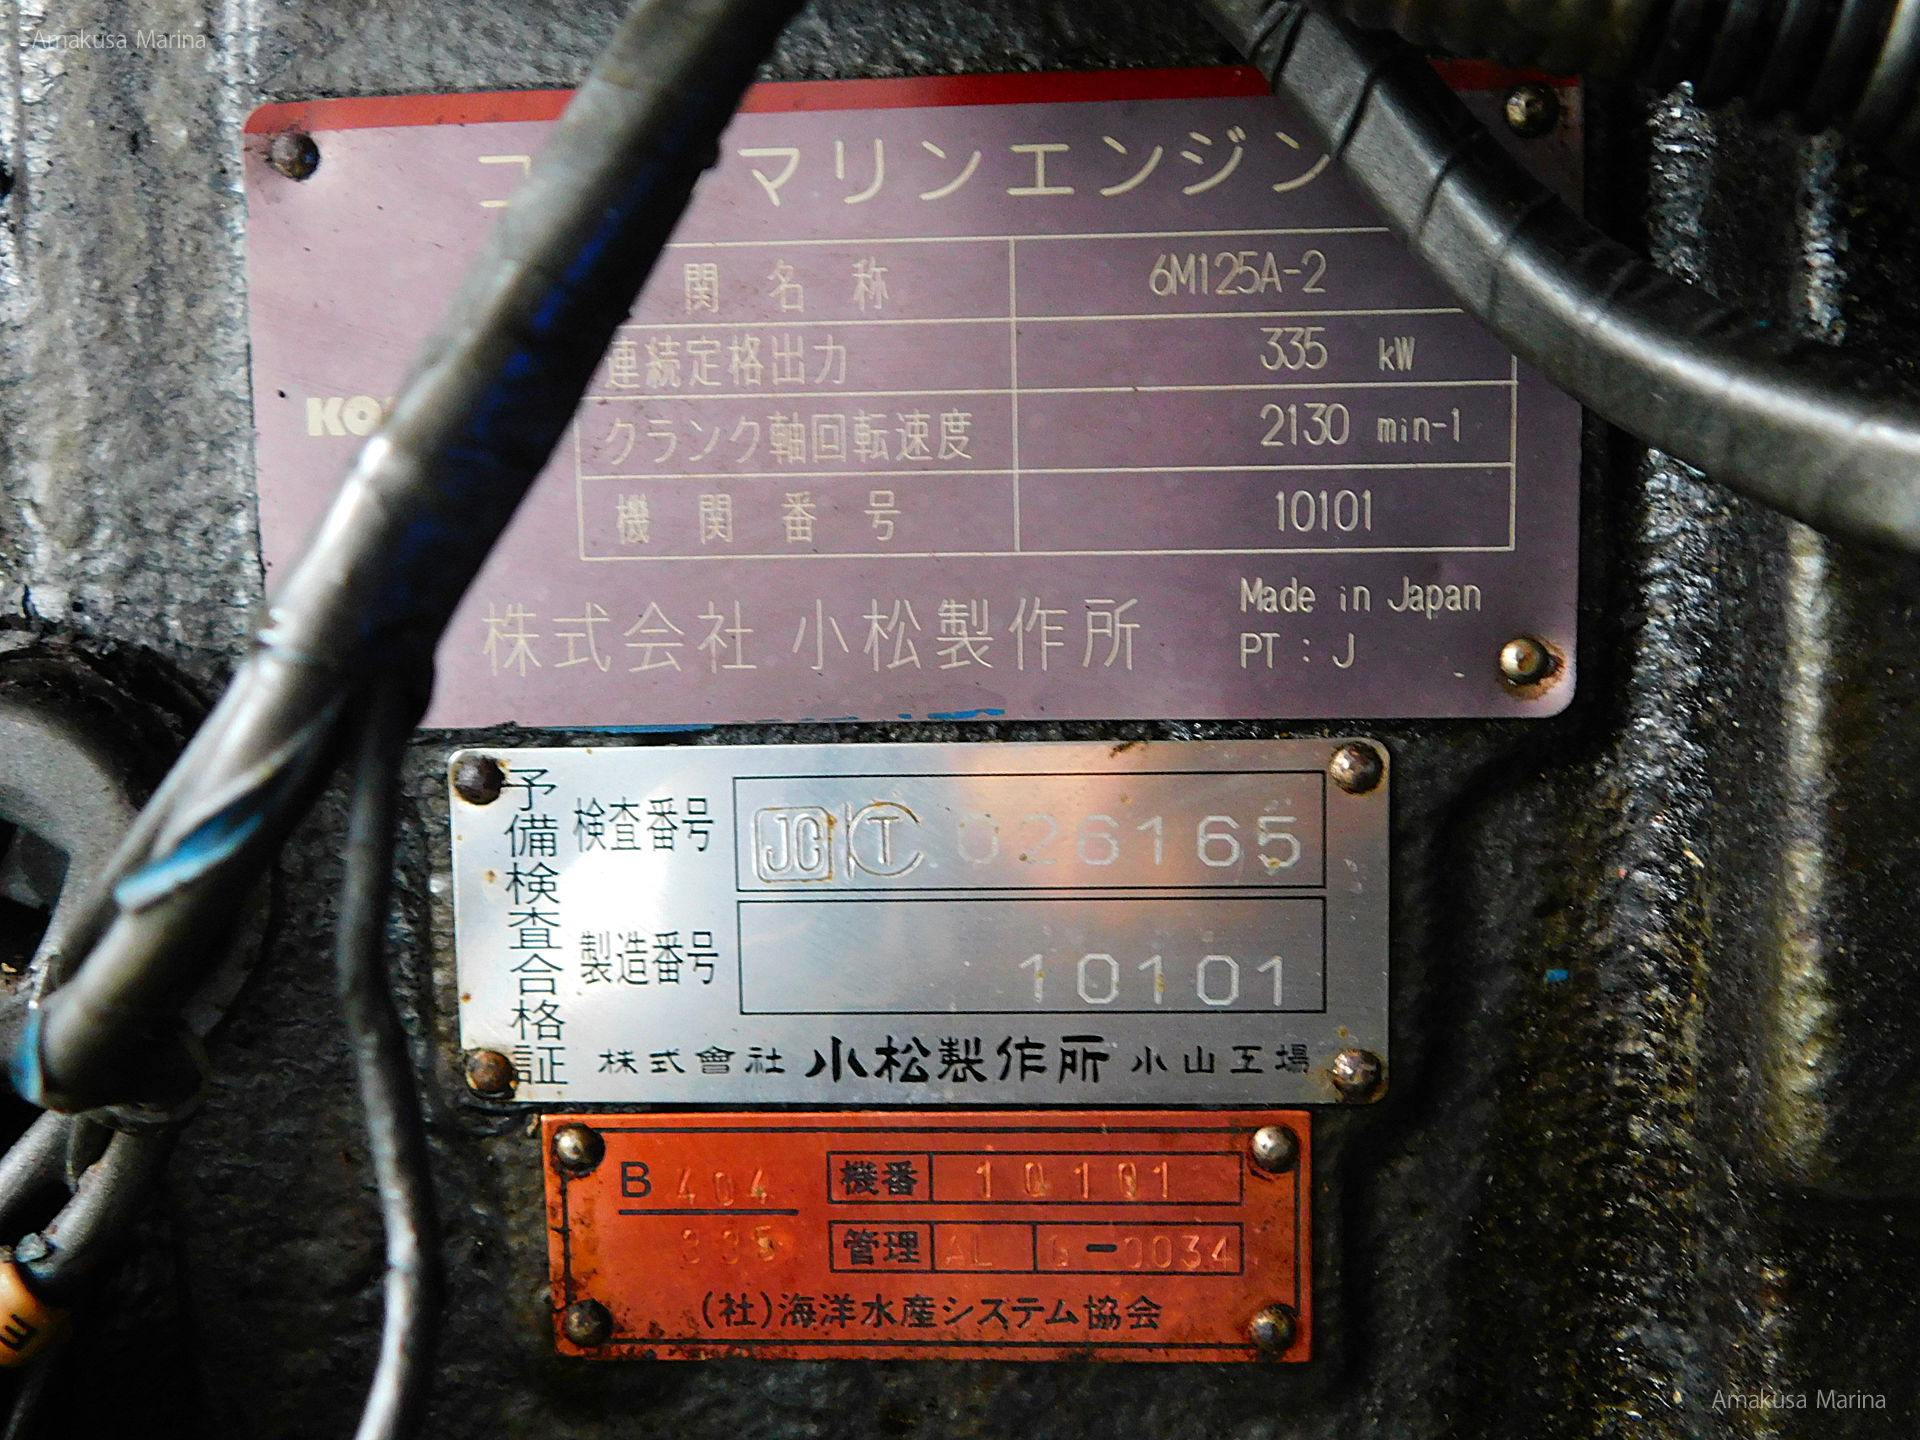 コマツ 6M125A-2 (3.43)550ps | あまくさマリーナ株式会社